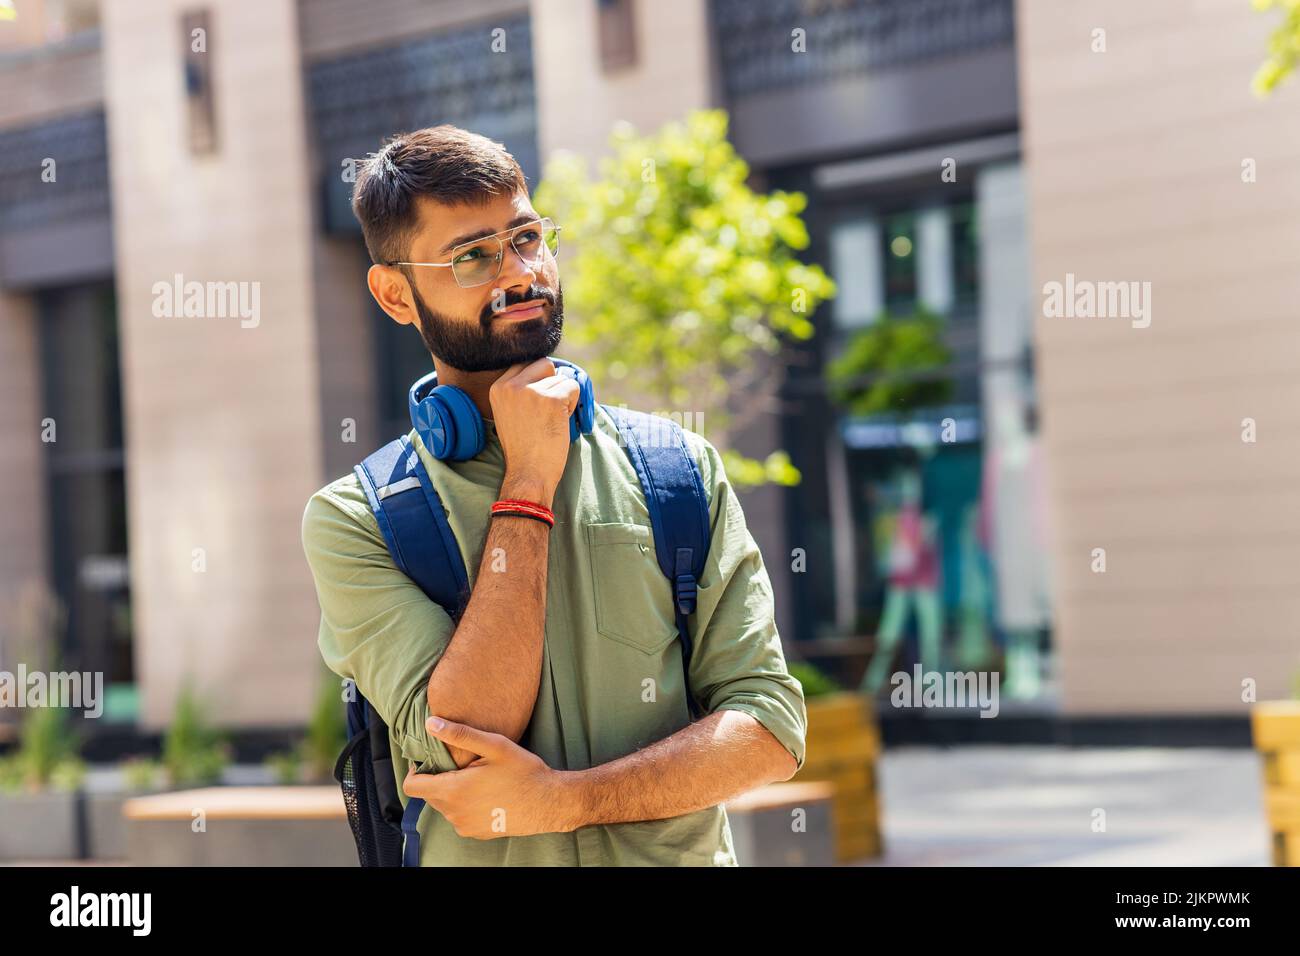 indischer Student mit blauem Headset und Rucksack, der an sonnigen Tagen nachdenklich aussieht Stockfoto